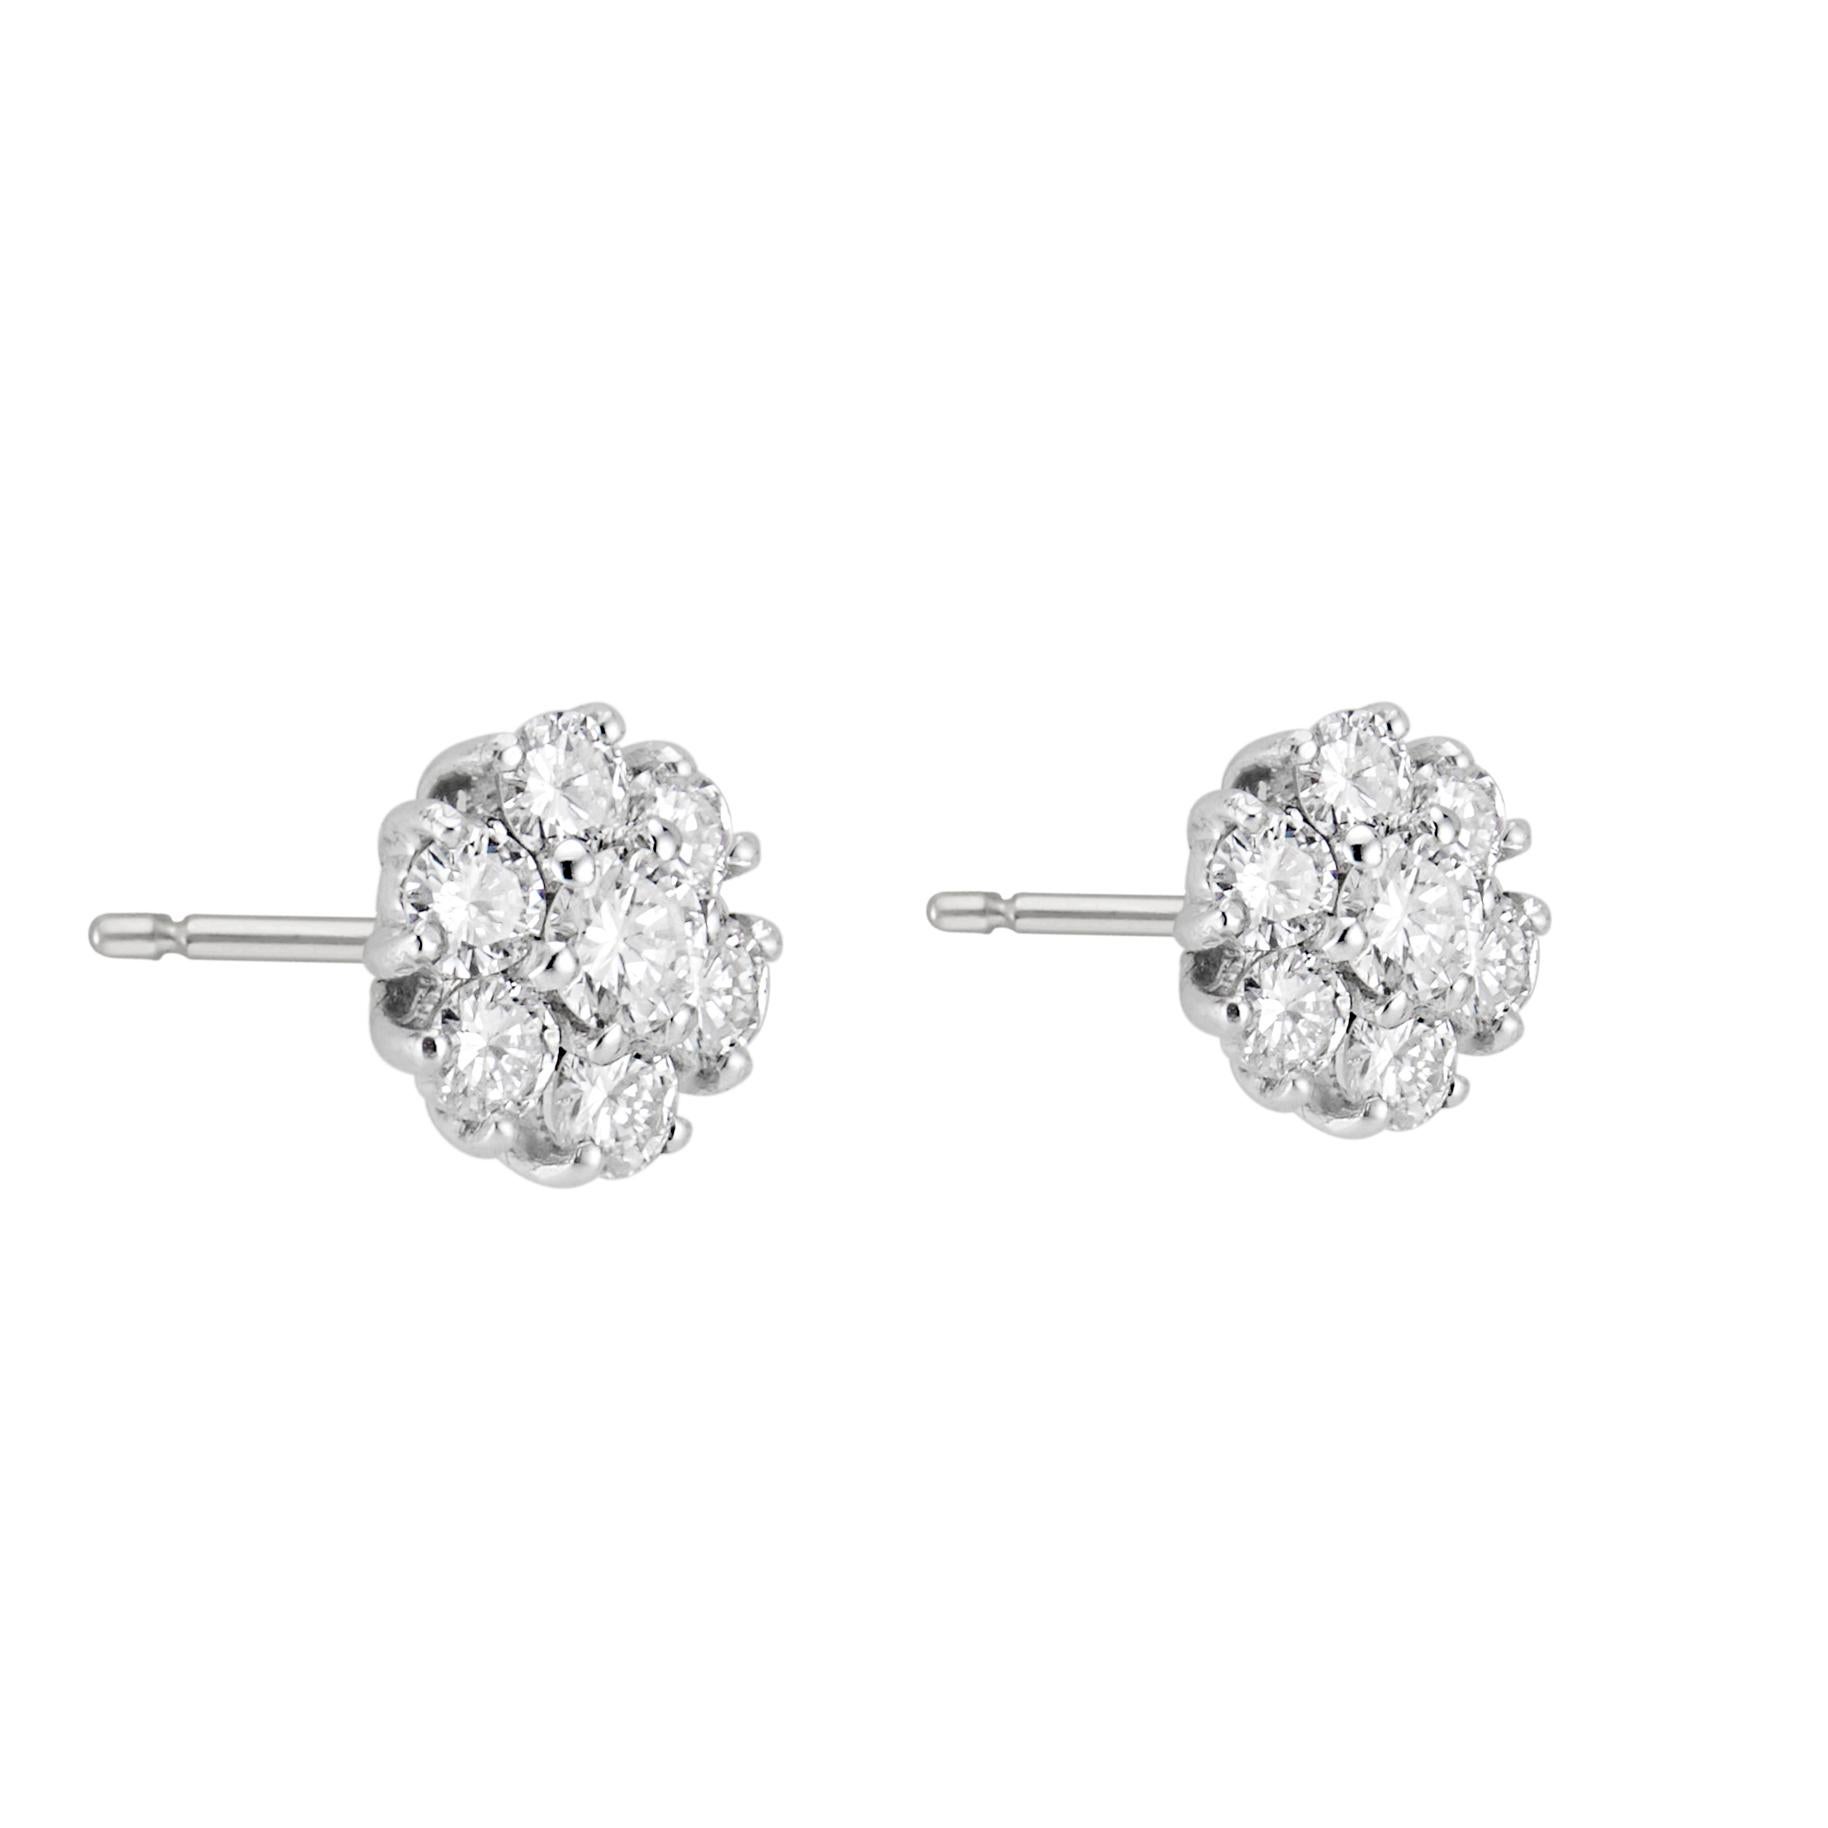 1.25 carat diamond stud earrings